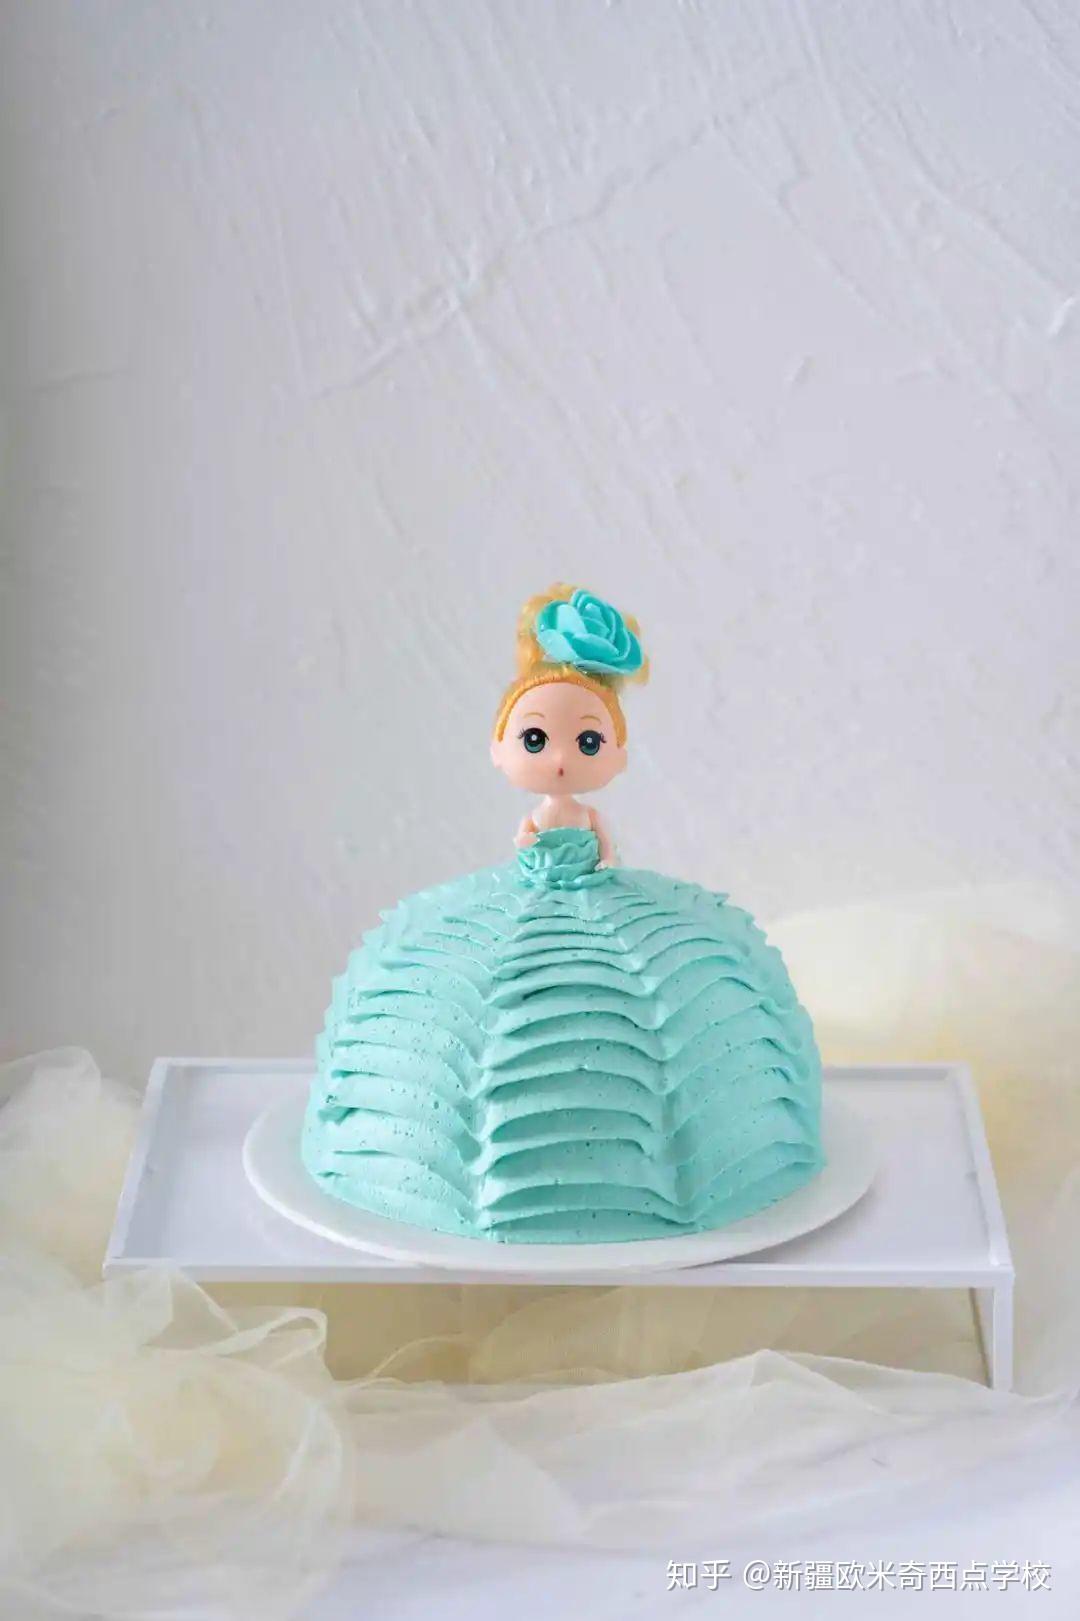 Q Cake House: 娃娃蛋糕